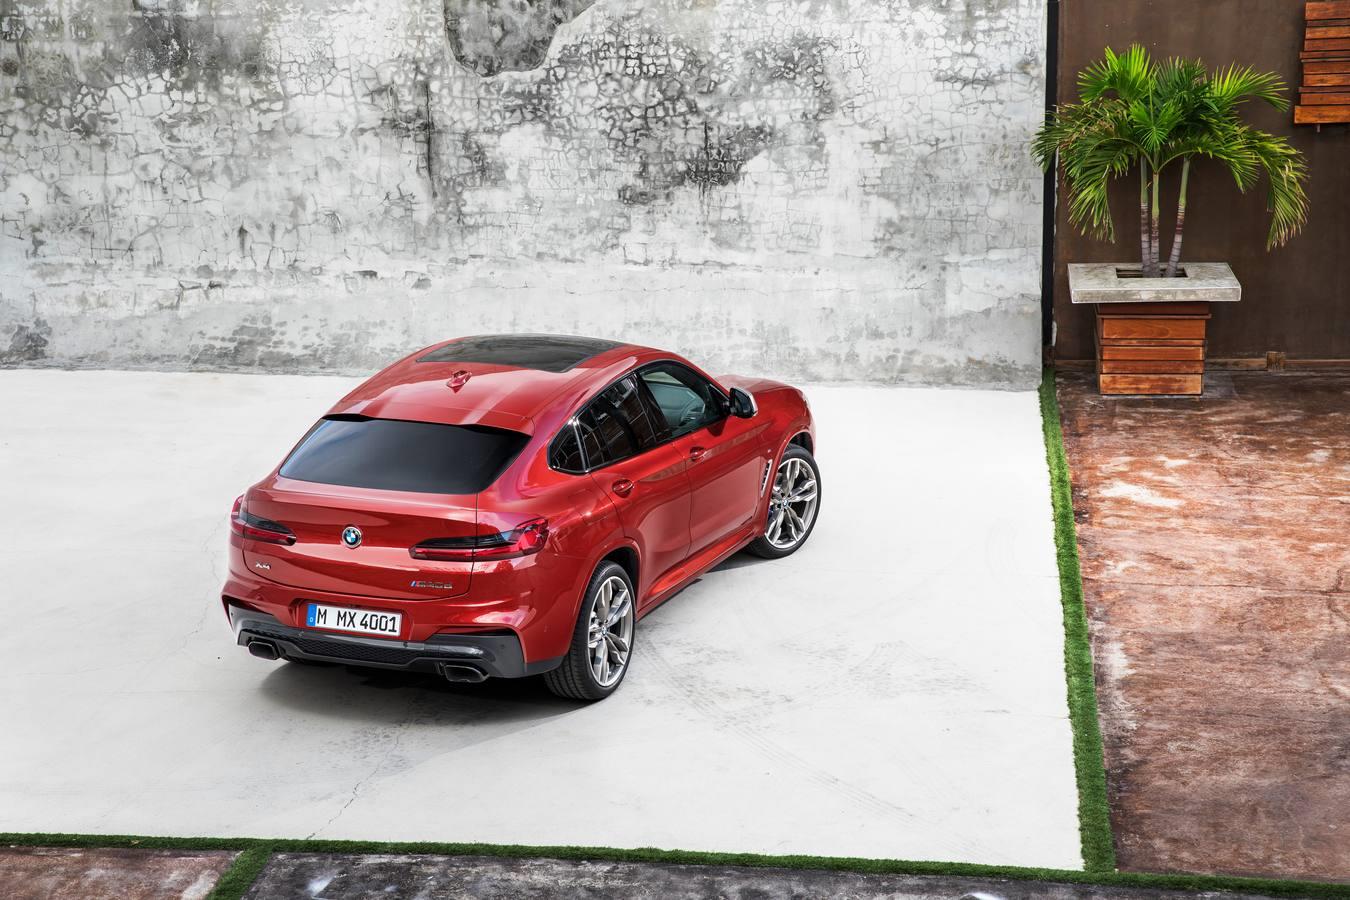 BMW renueva el X4. El nuevo modelo aporta una dinámica de conducción mejorada, un diseño que acentúa el carácter deportivo y añade sistemas de asistencia de última generación y tecnologías de conectividad.